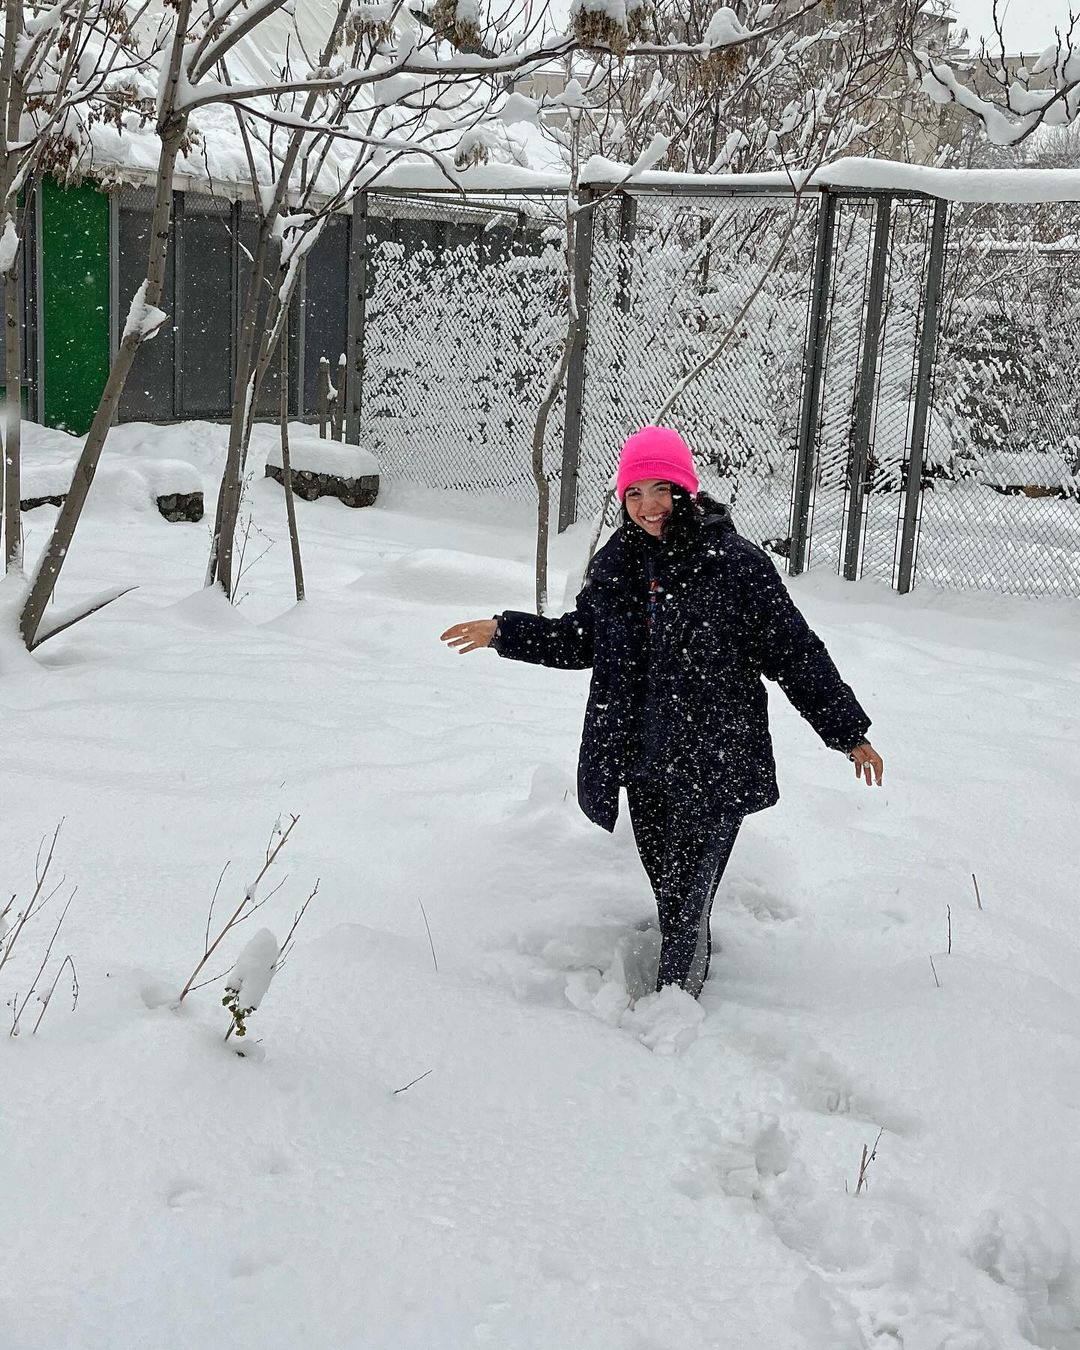 تصاویر خاص و دیدنی از سارا حاتمی حین برف بازی